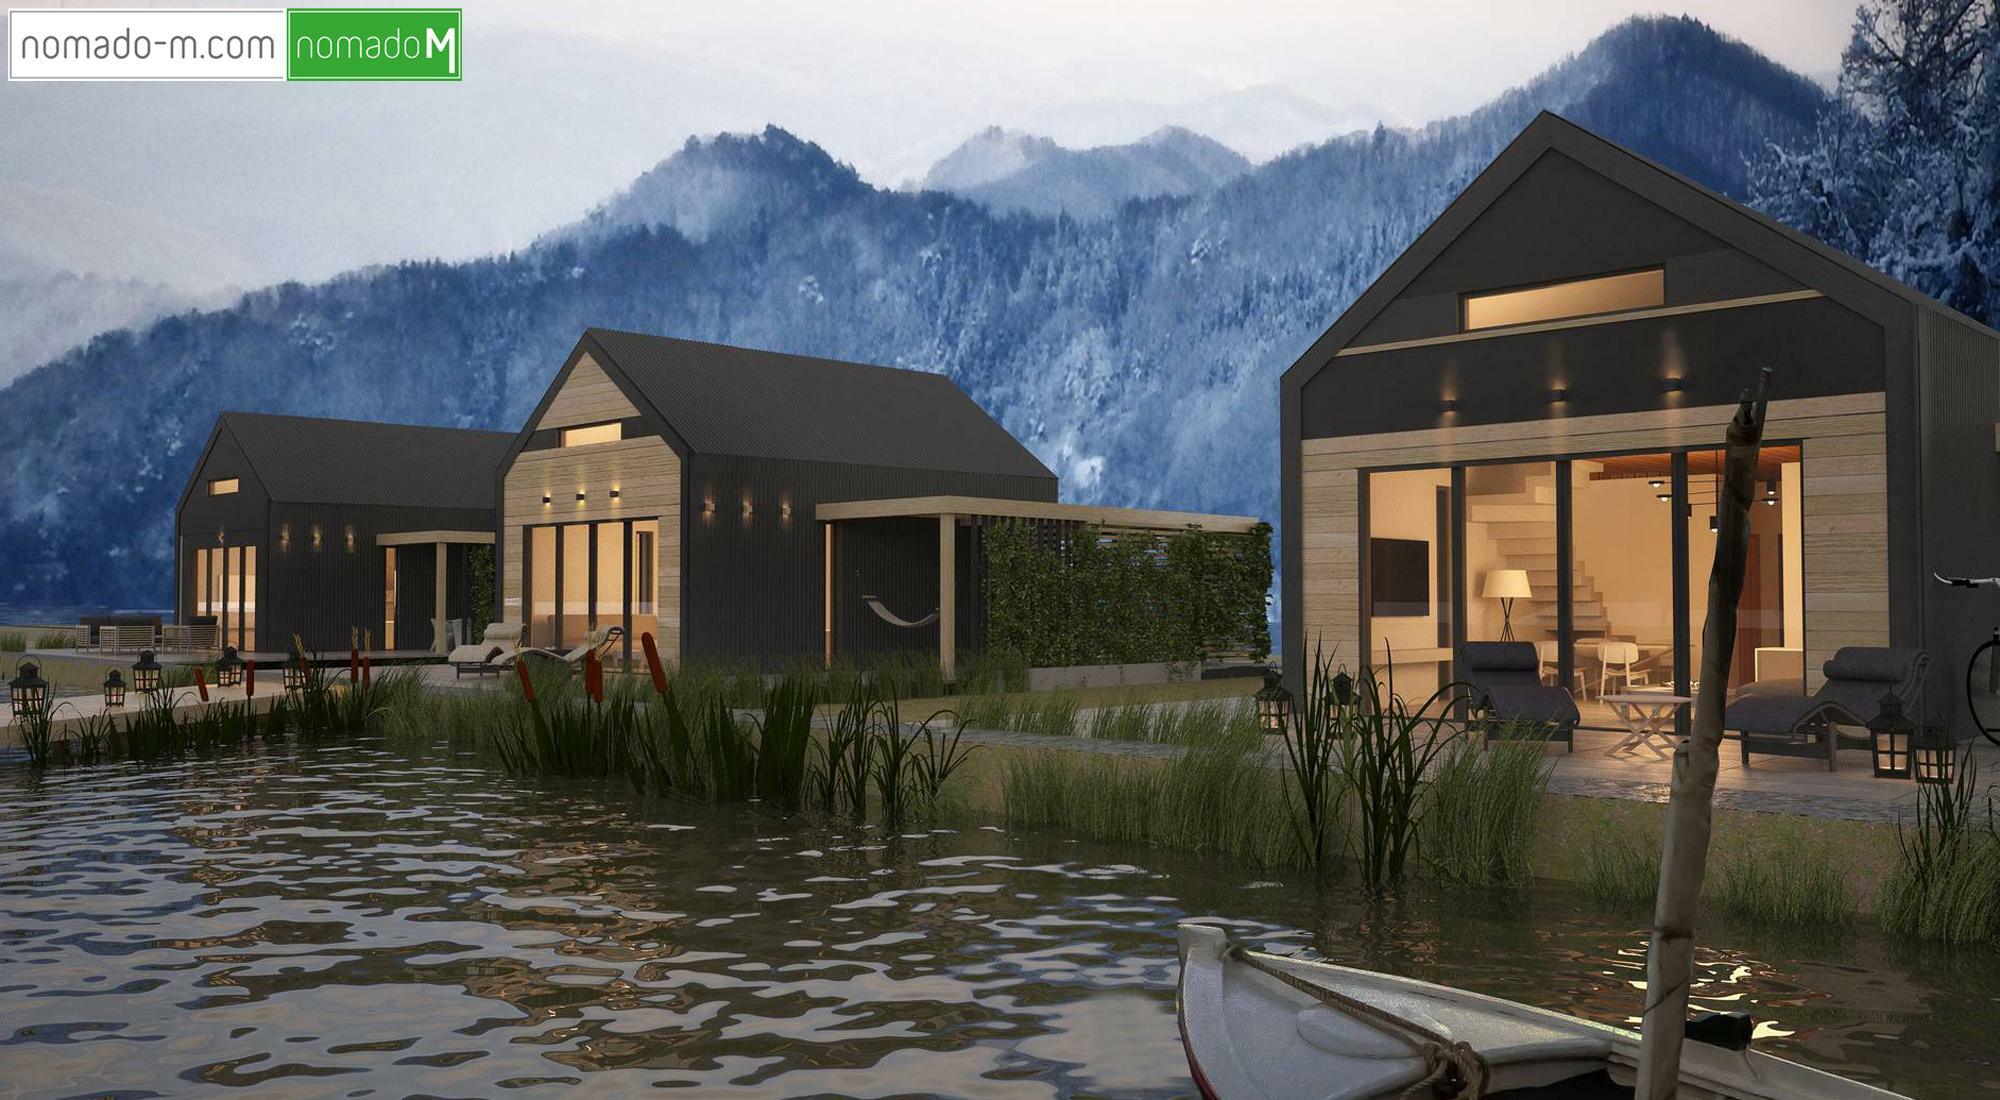 nM domy modułowe pomysł na osiedle domów modułowych Optimo nad jeziorem z elewacjami z blachy na rąbek i drewna